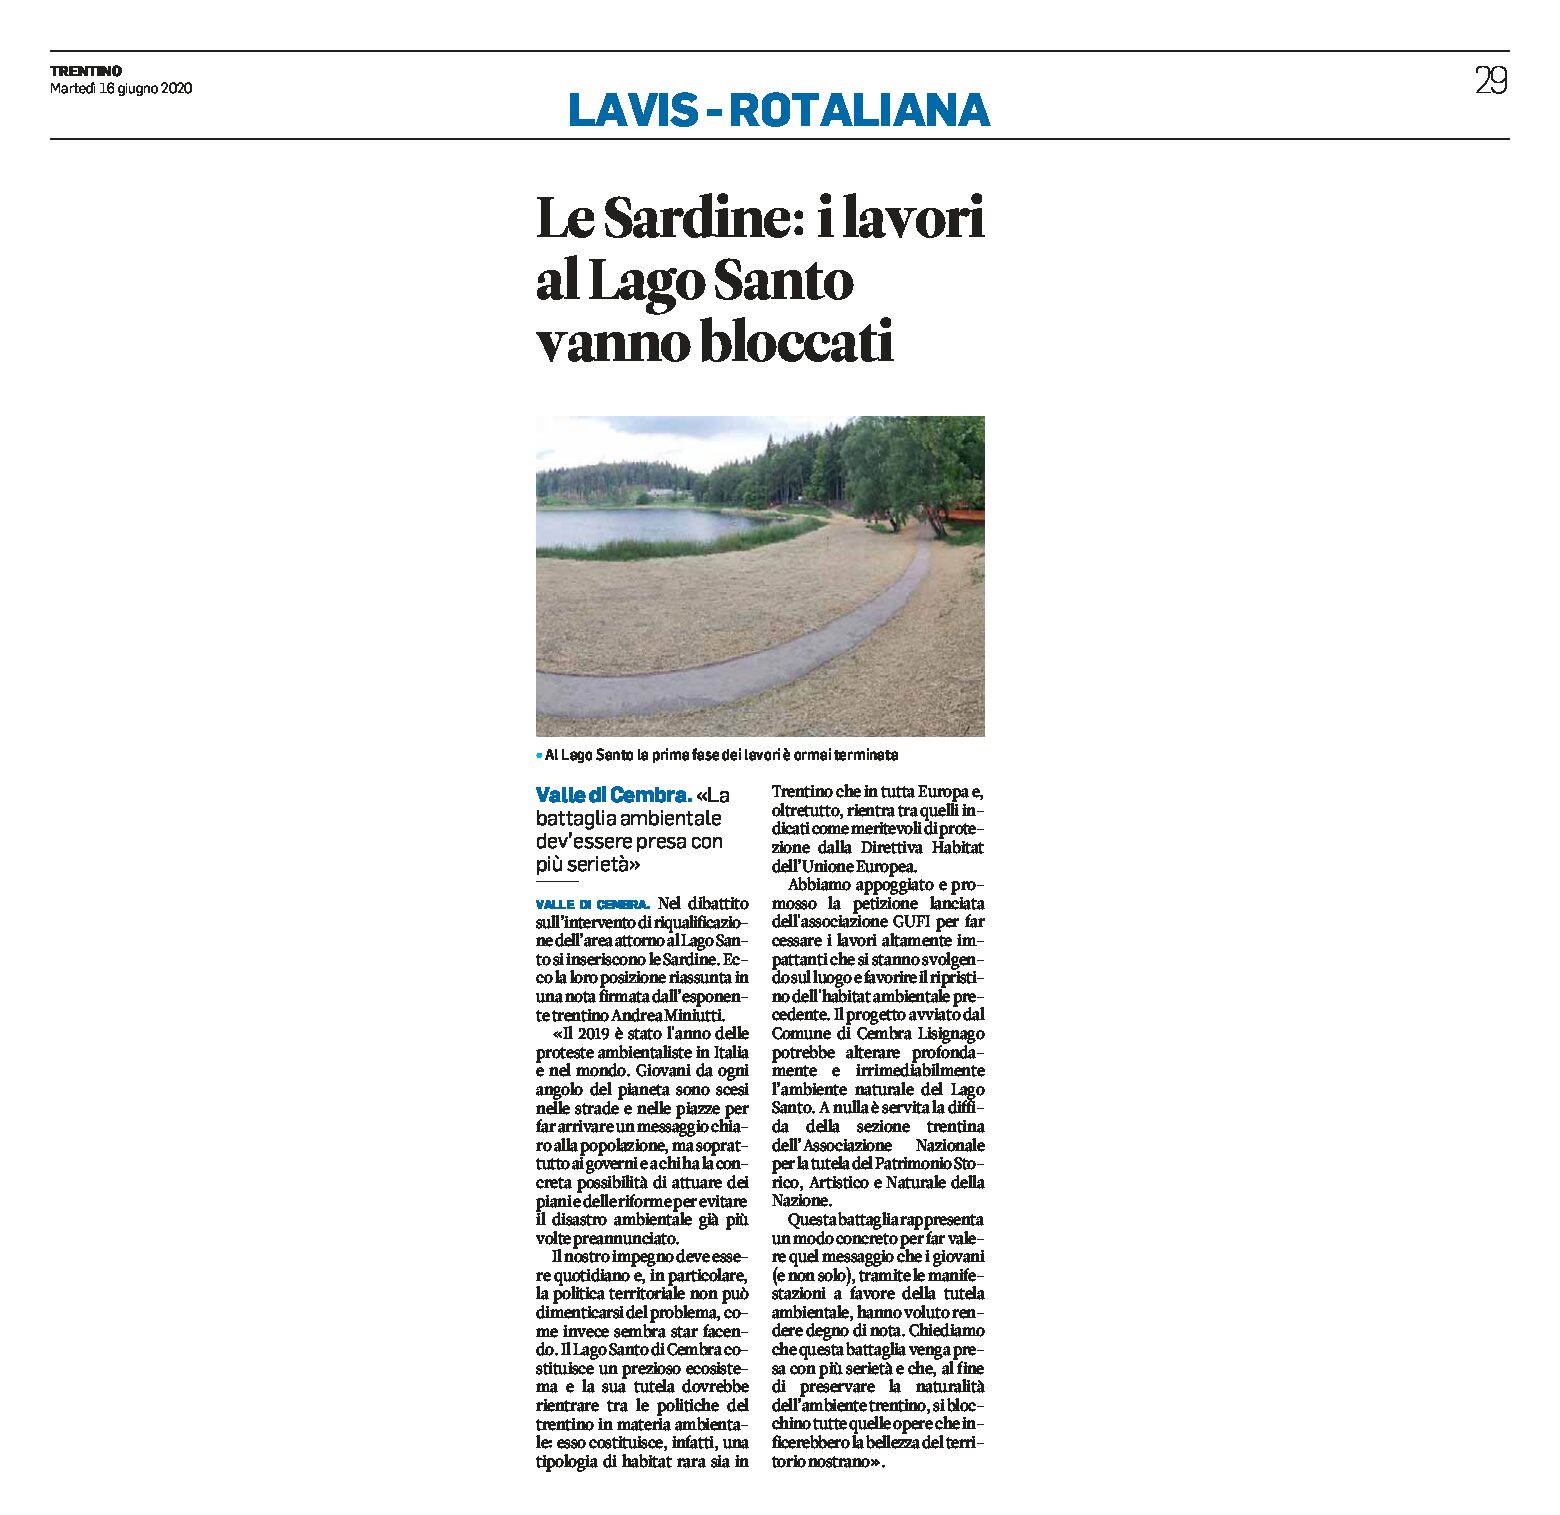 Lago Santo: le Sardine “i lavori vanno bloccati”